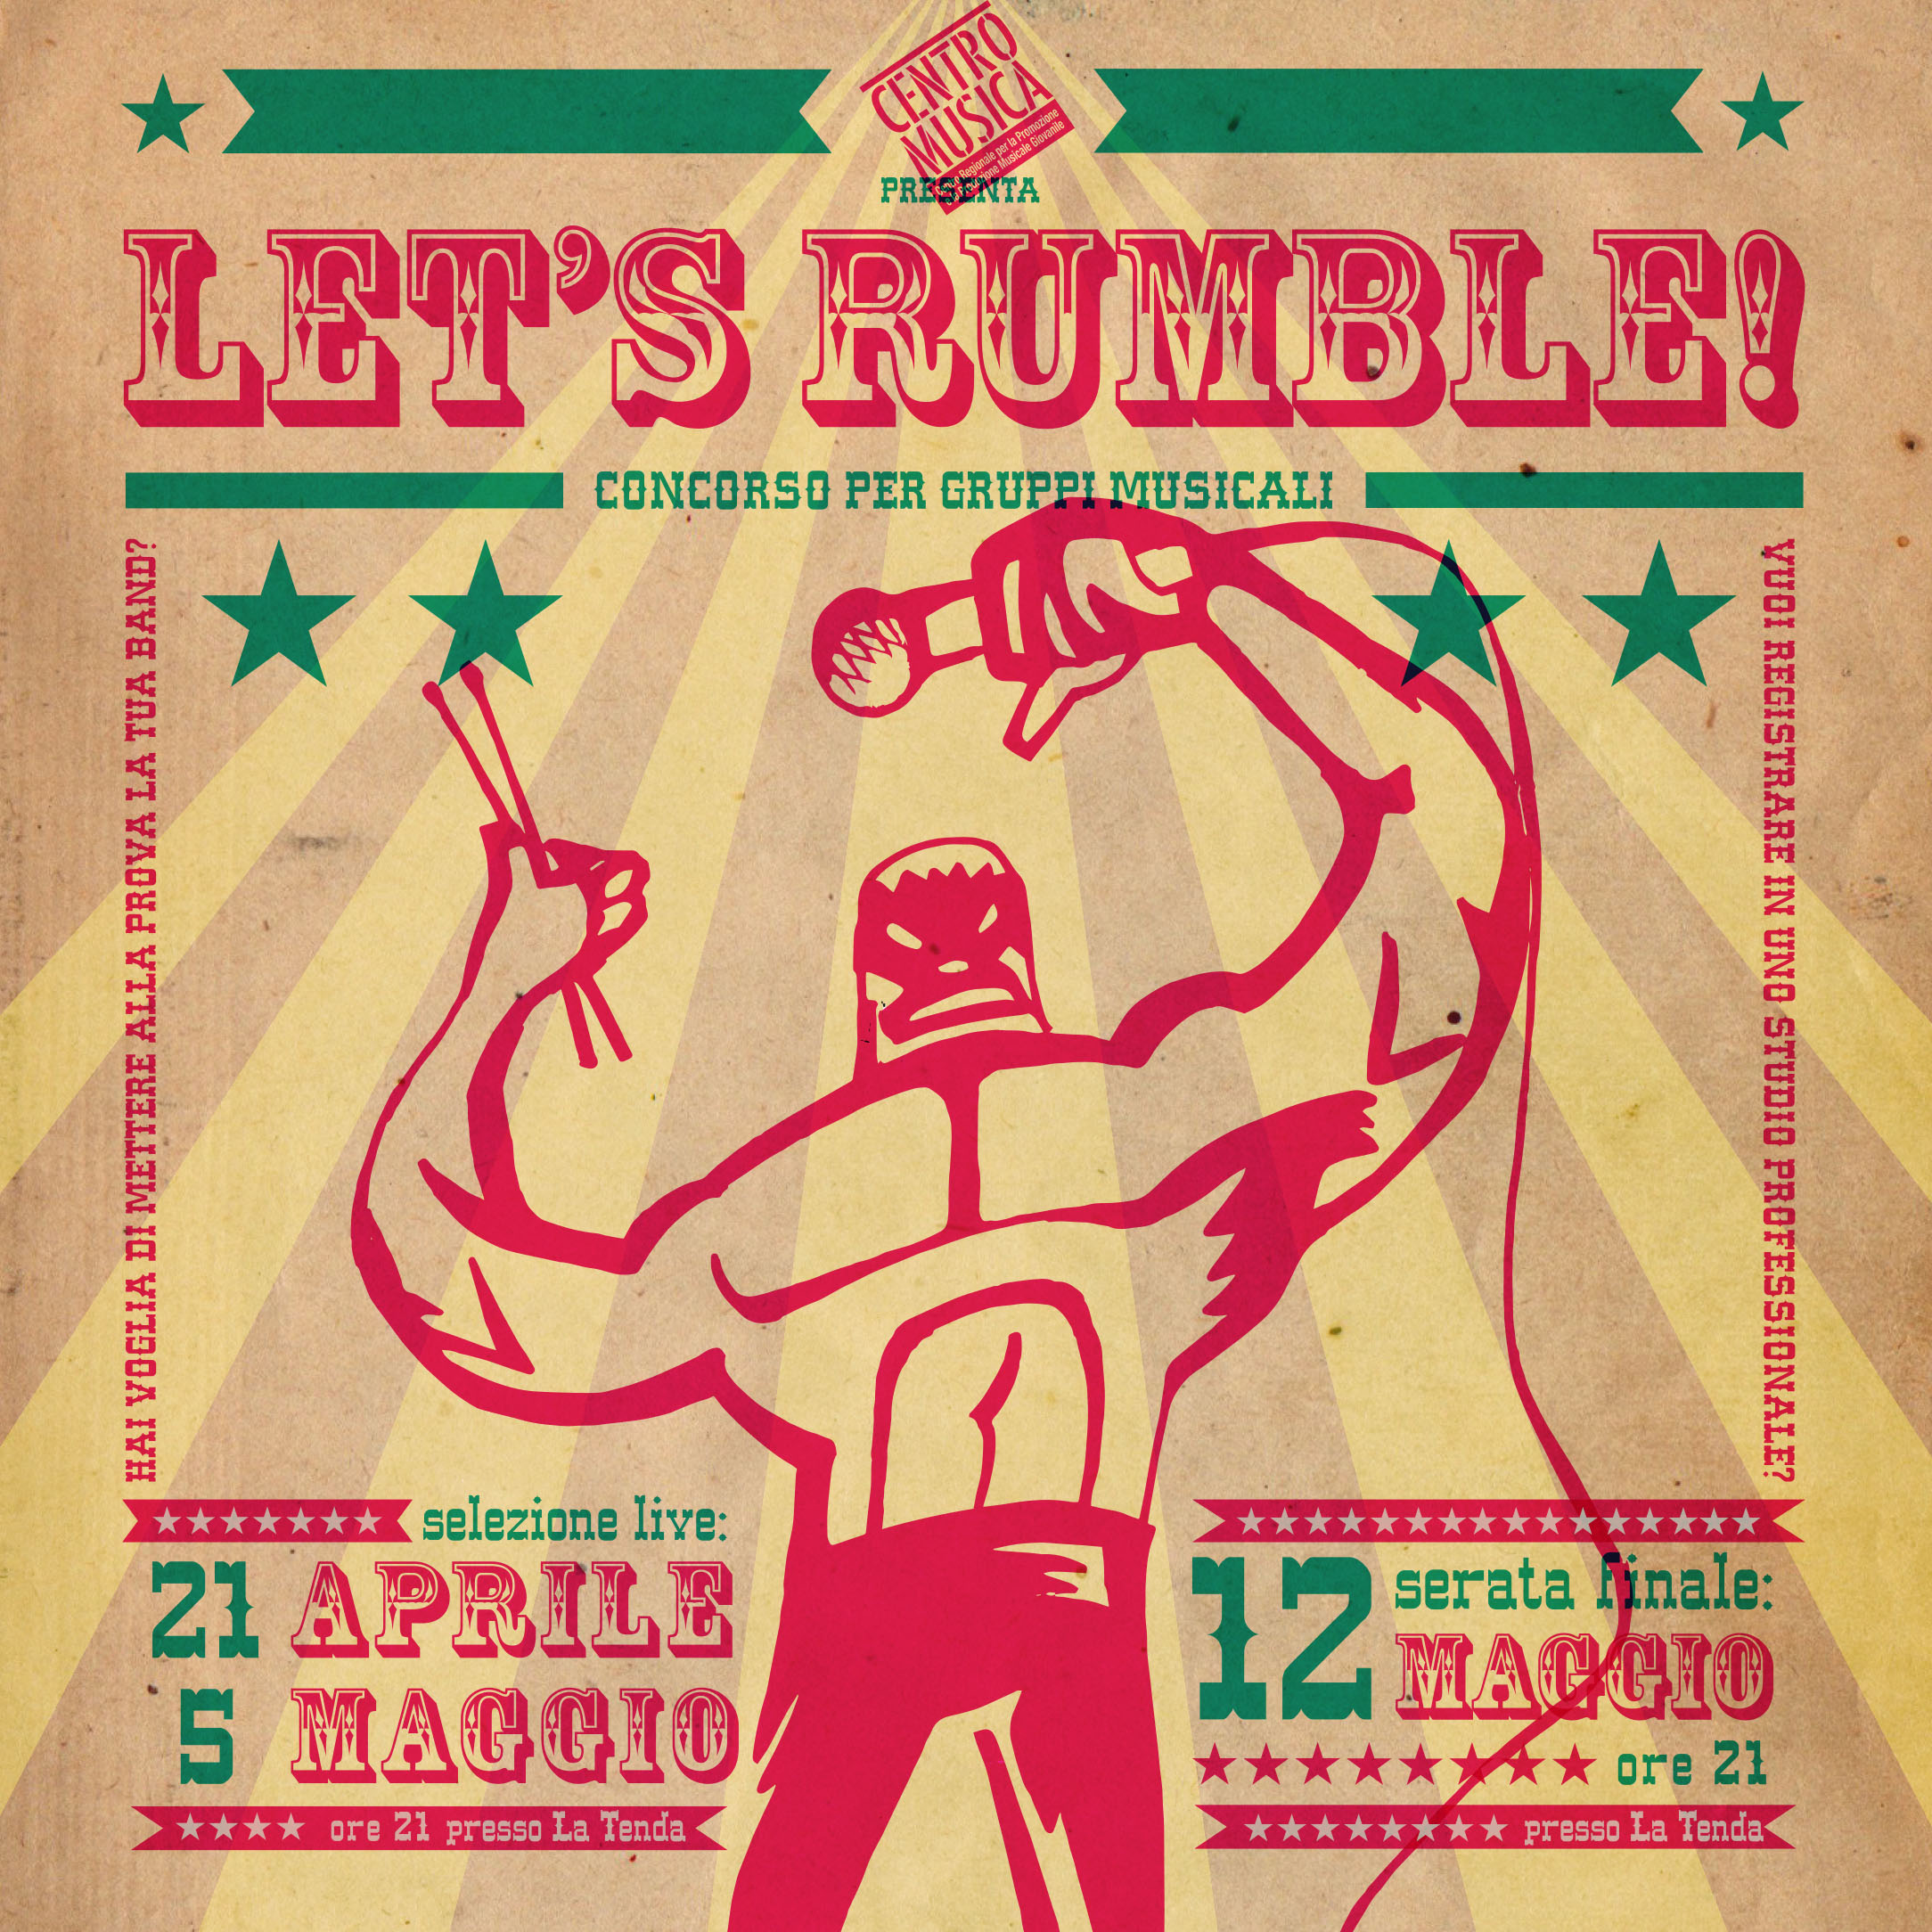 Let's Rumble'. Flyer Design. 2017.